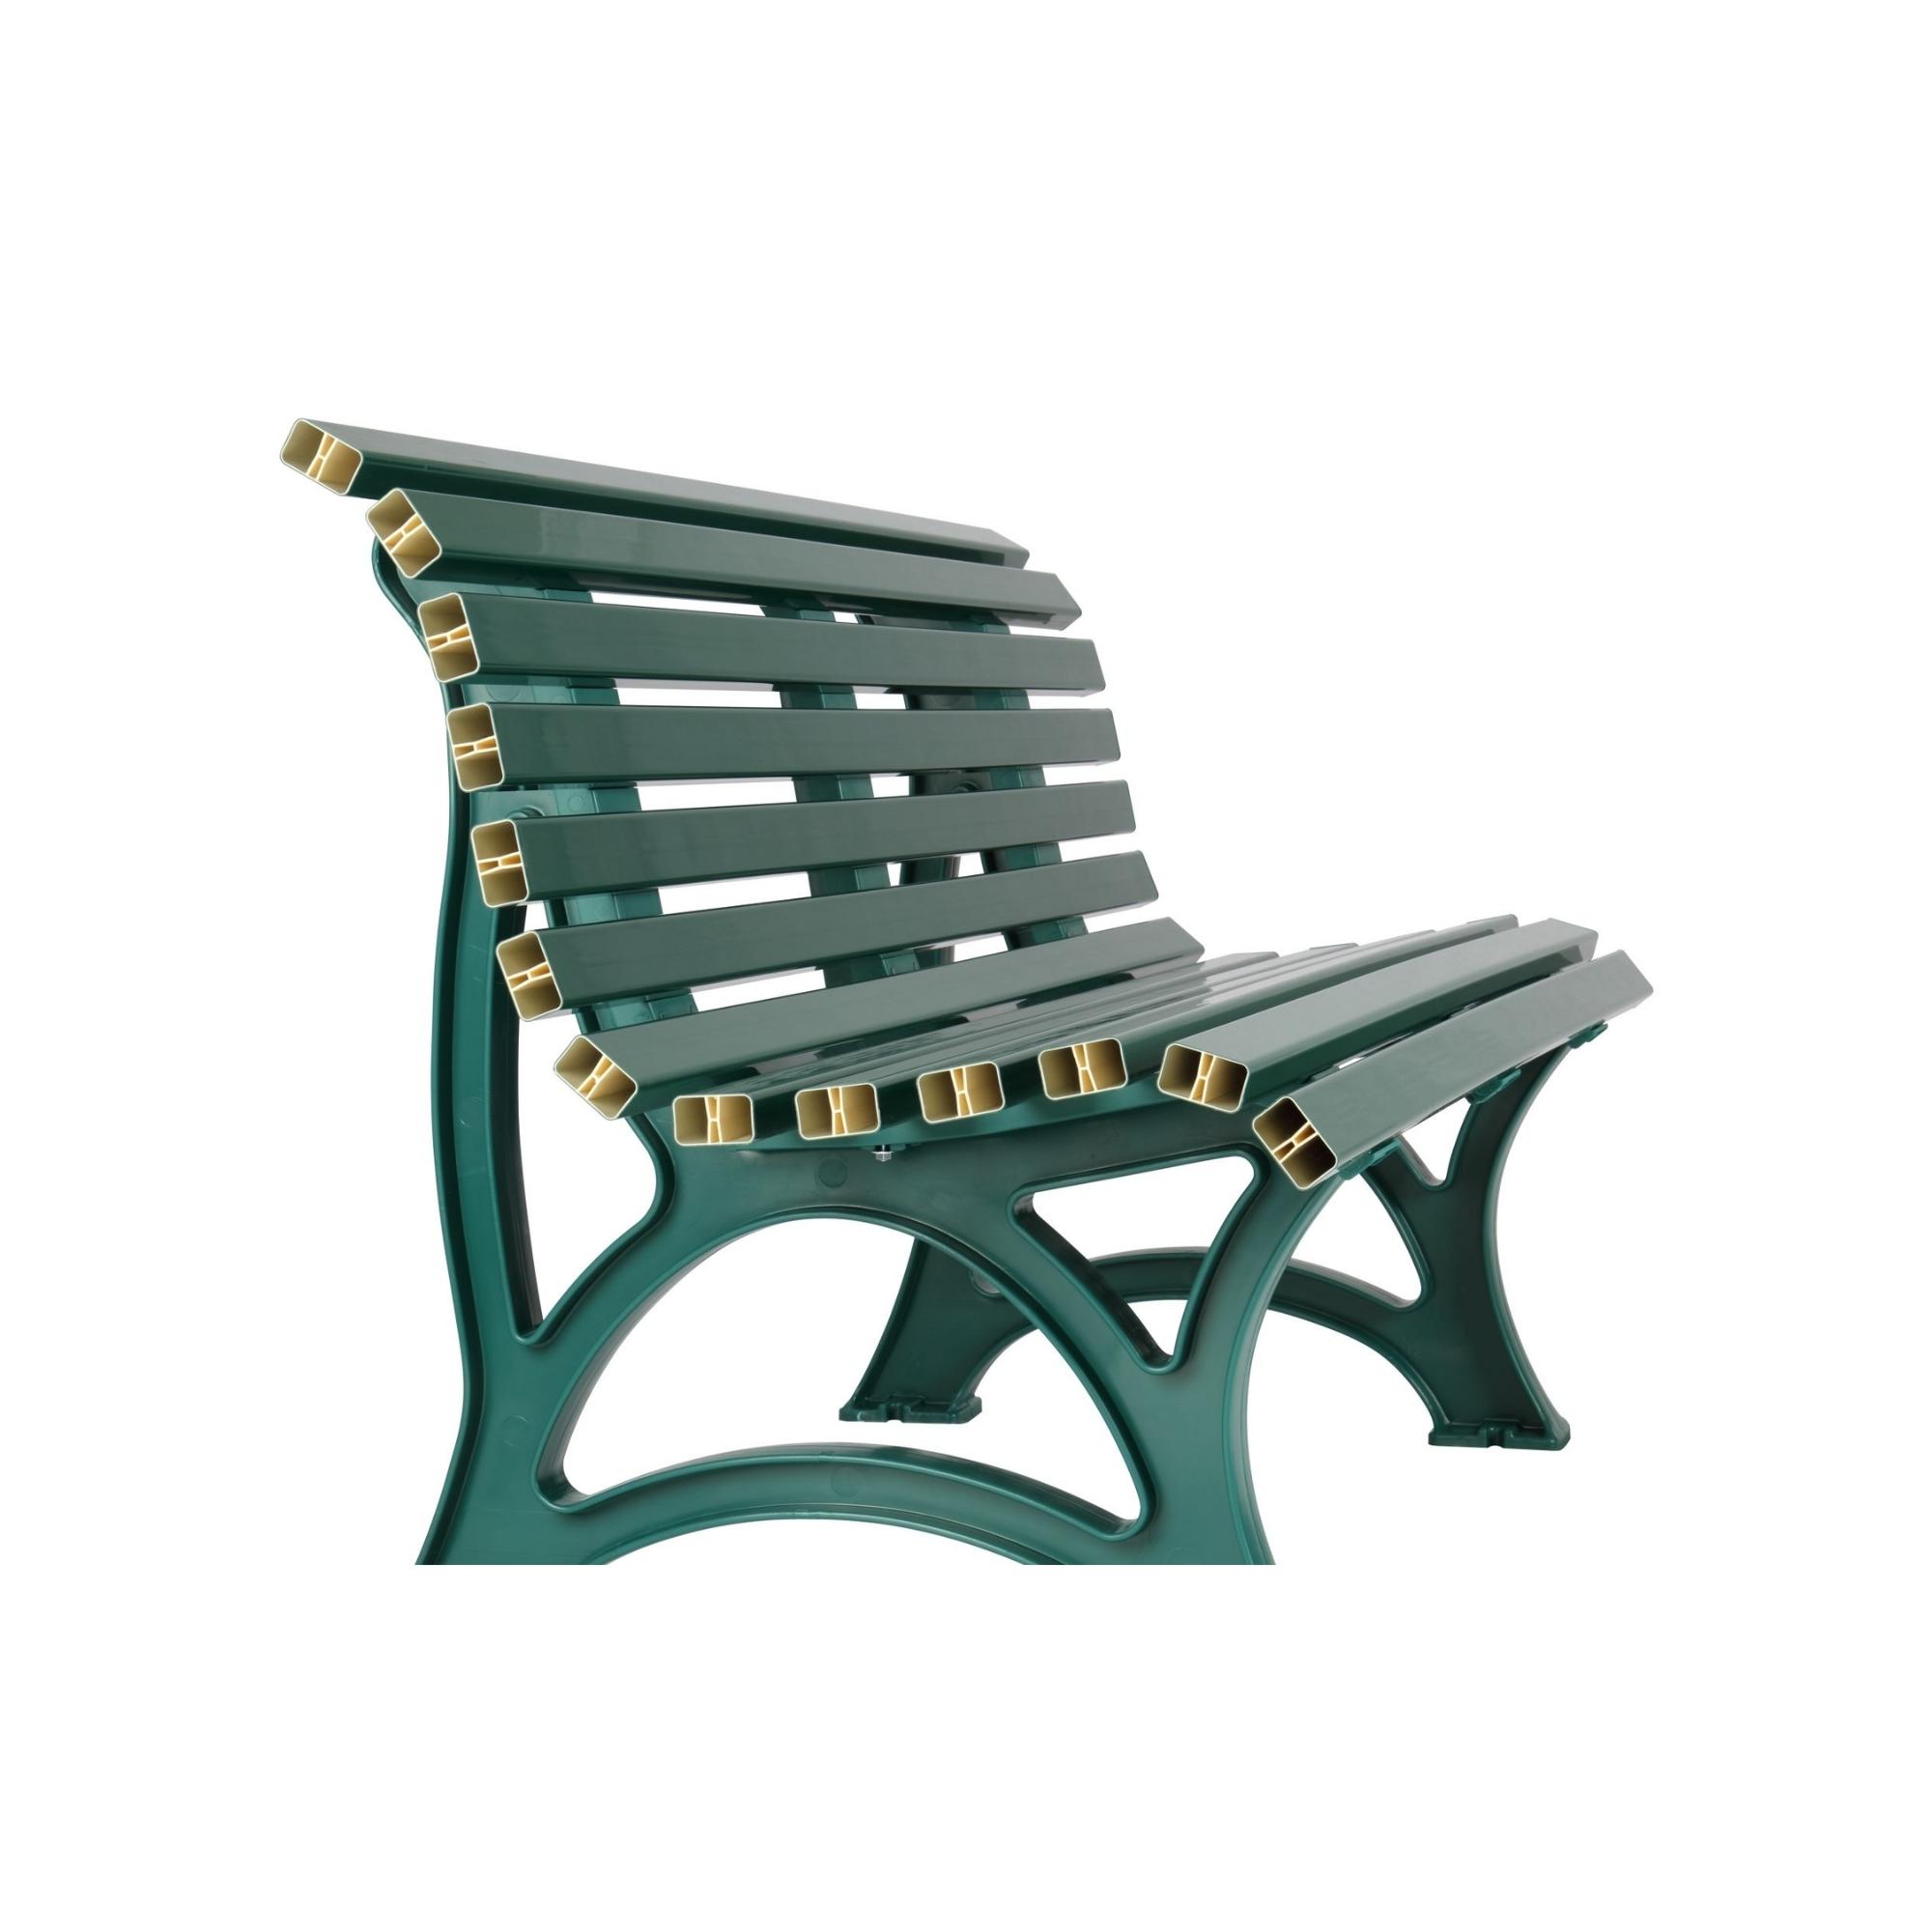 Gartenbank Jamaika | 3-Sitzer | Grün | HxBxT 80x150x64cm | Witterungs- & UV-beständiger Kunststoff | Parkbank Sitzbank Außenbereich Garten Balkon Terrasse